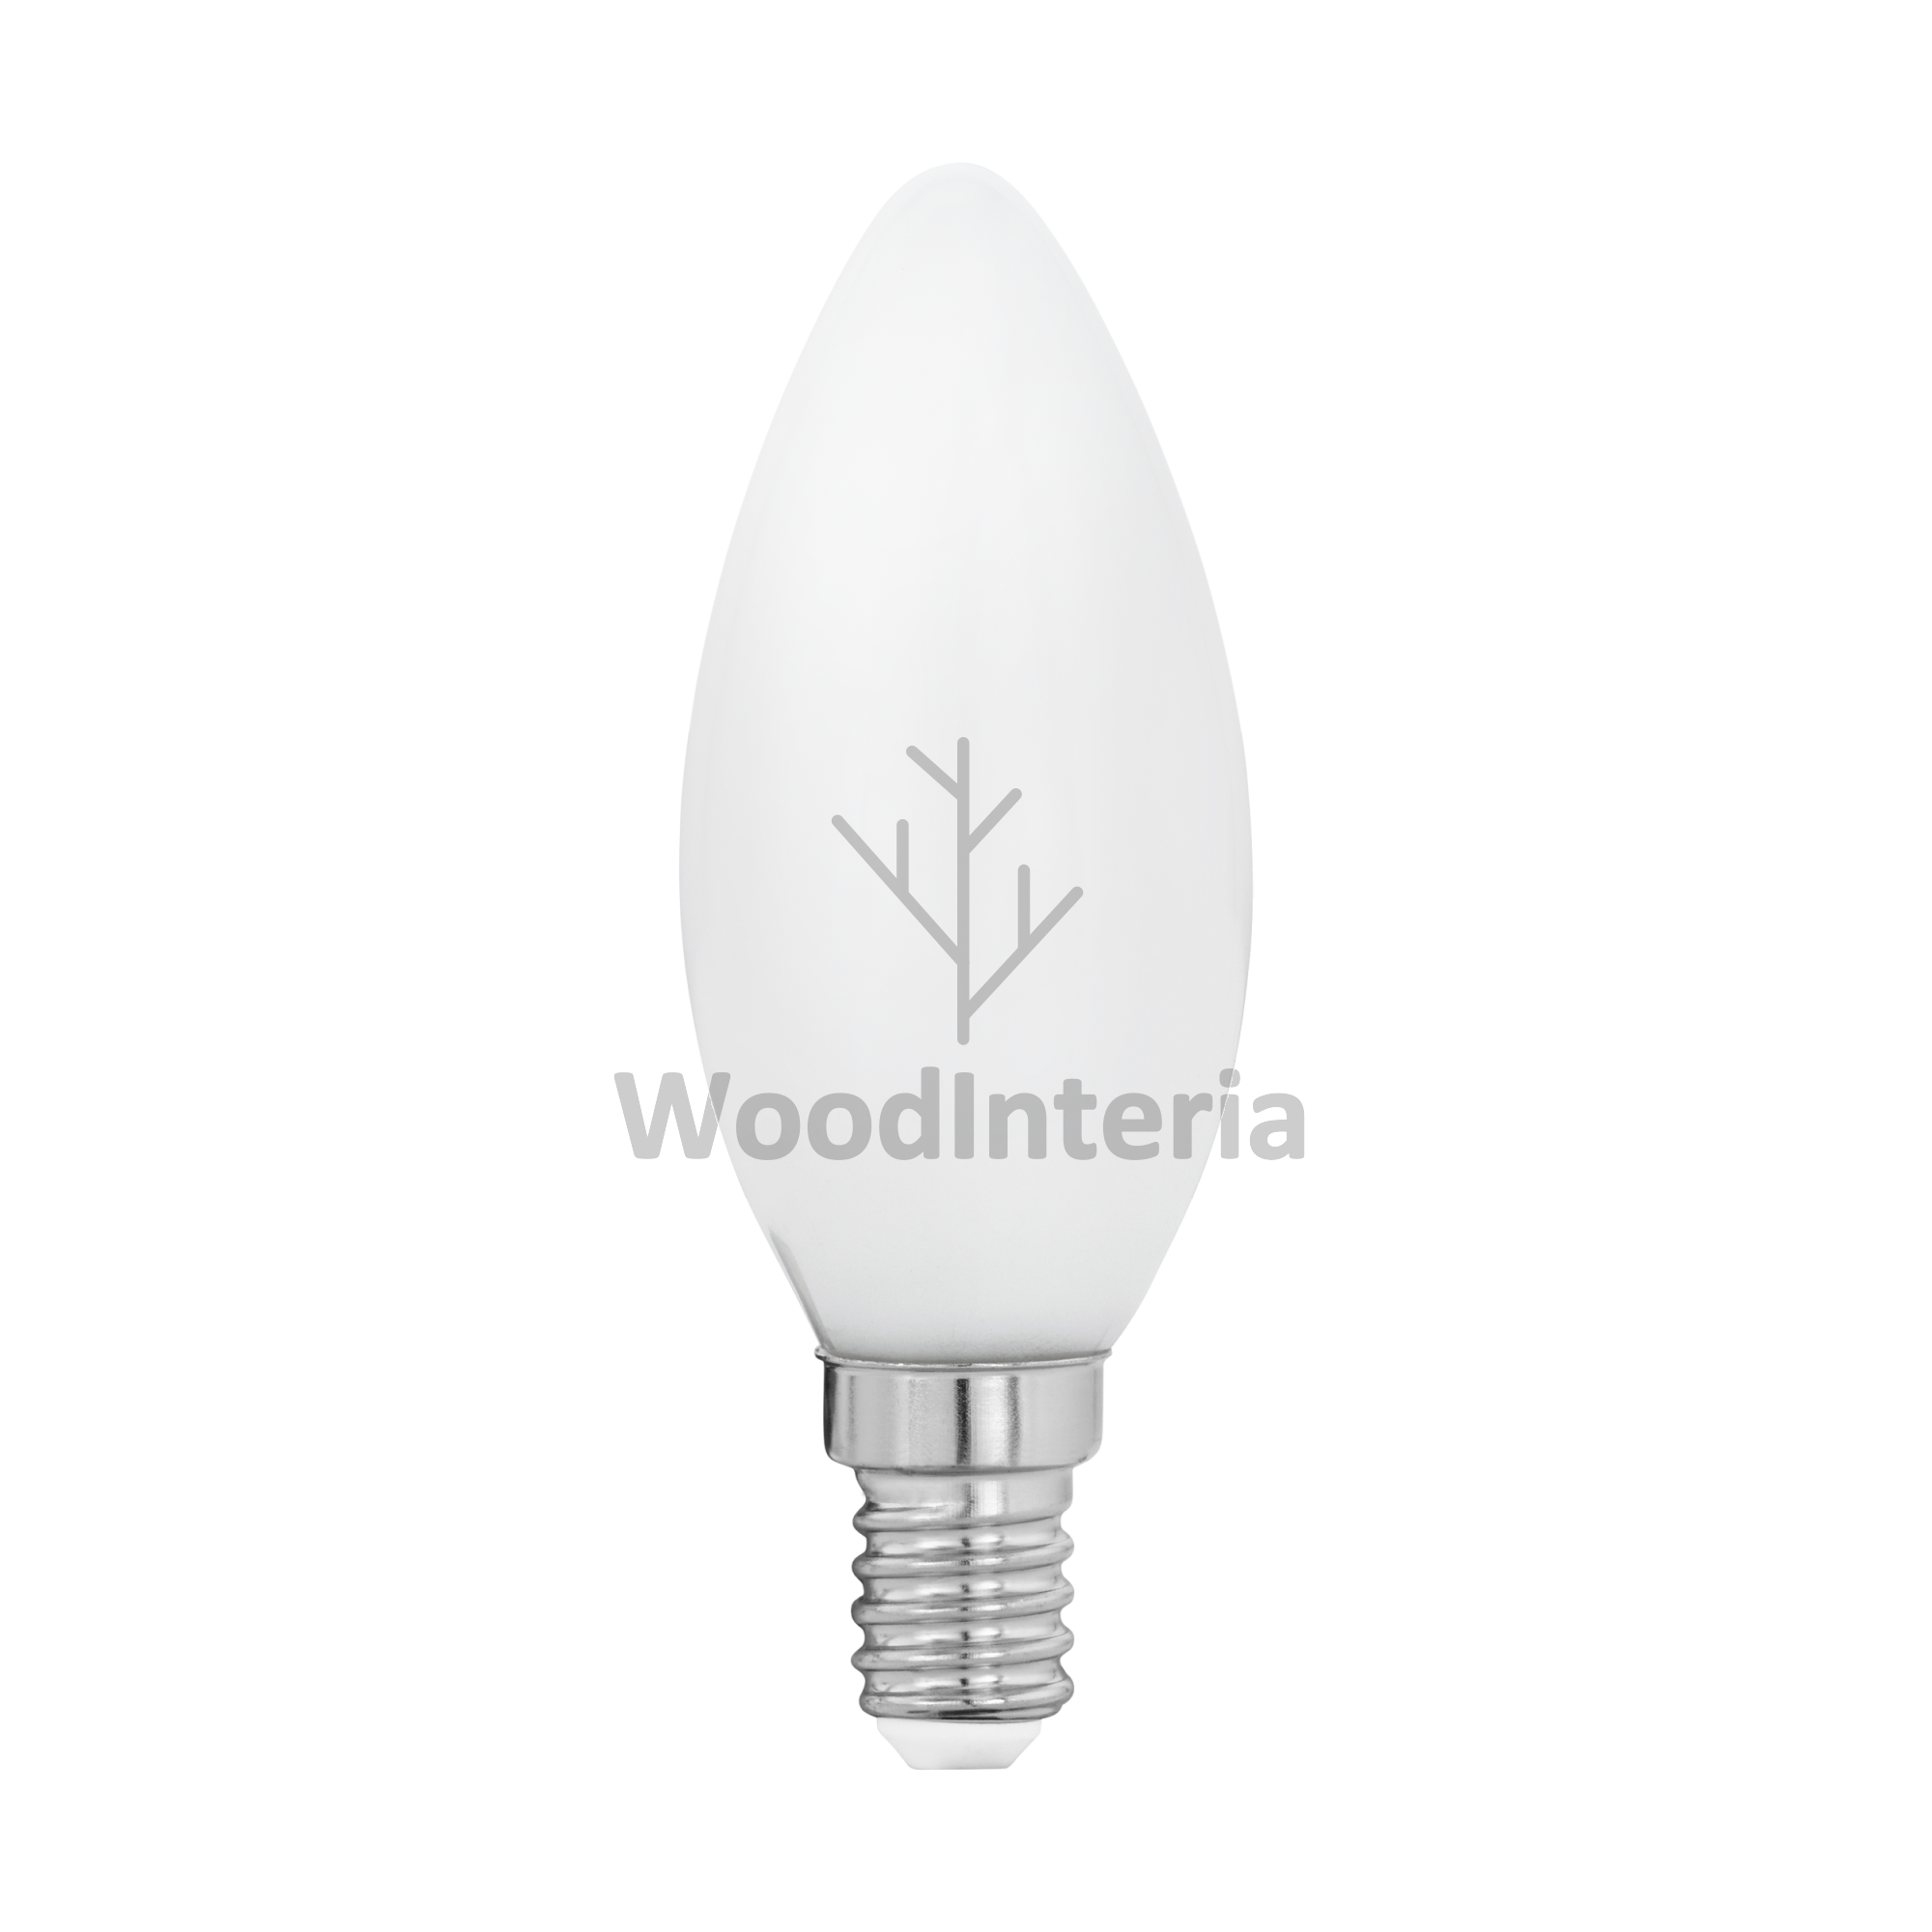 фото лампочка white bulb #7 led в скандинавском интерьере лофт эко | WoodInteria